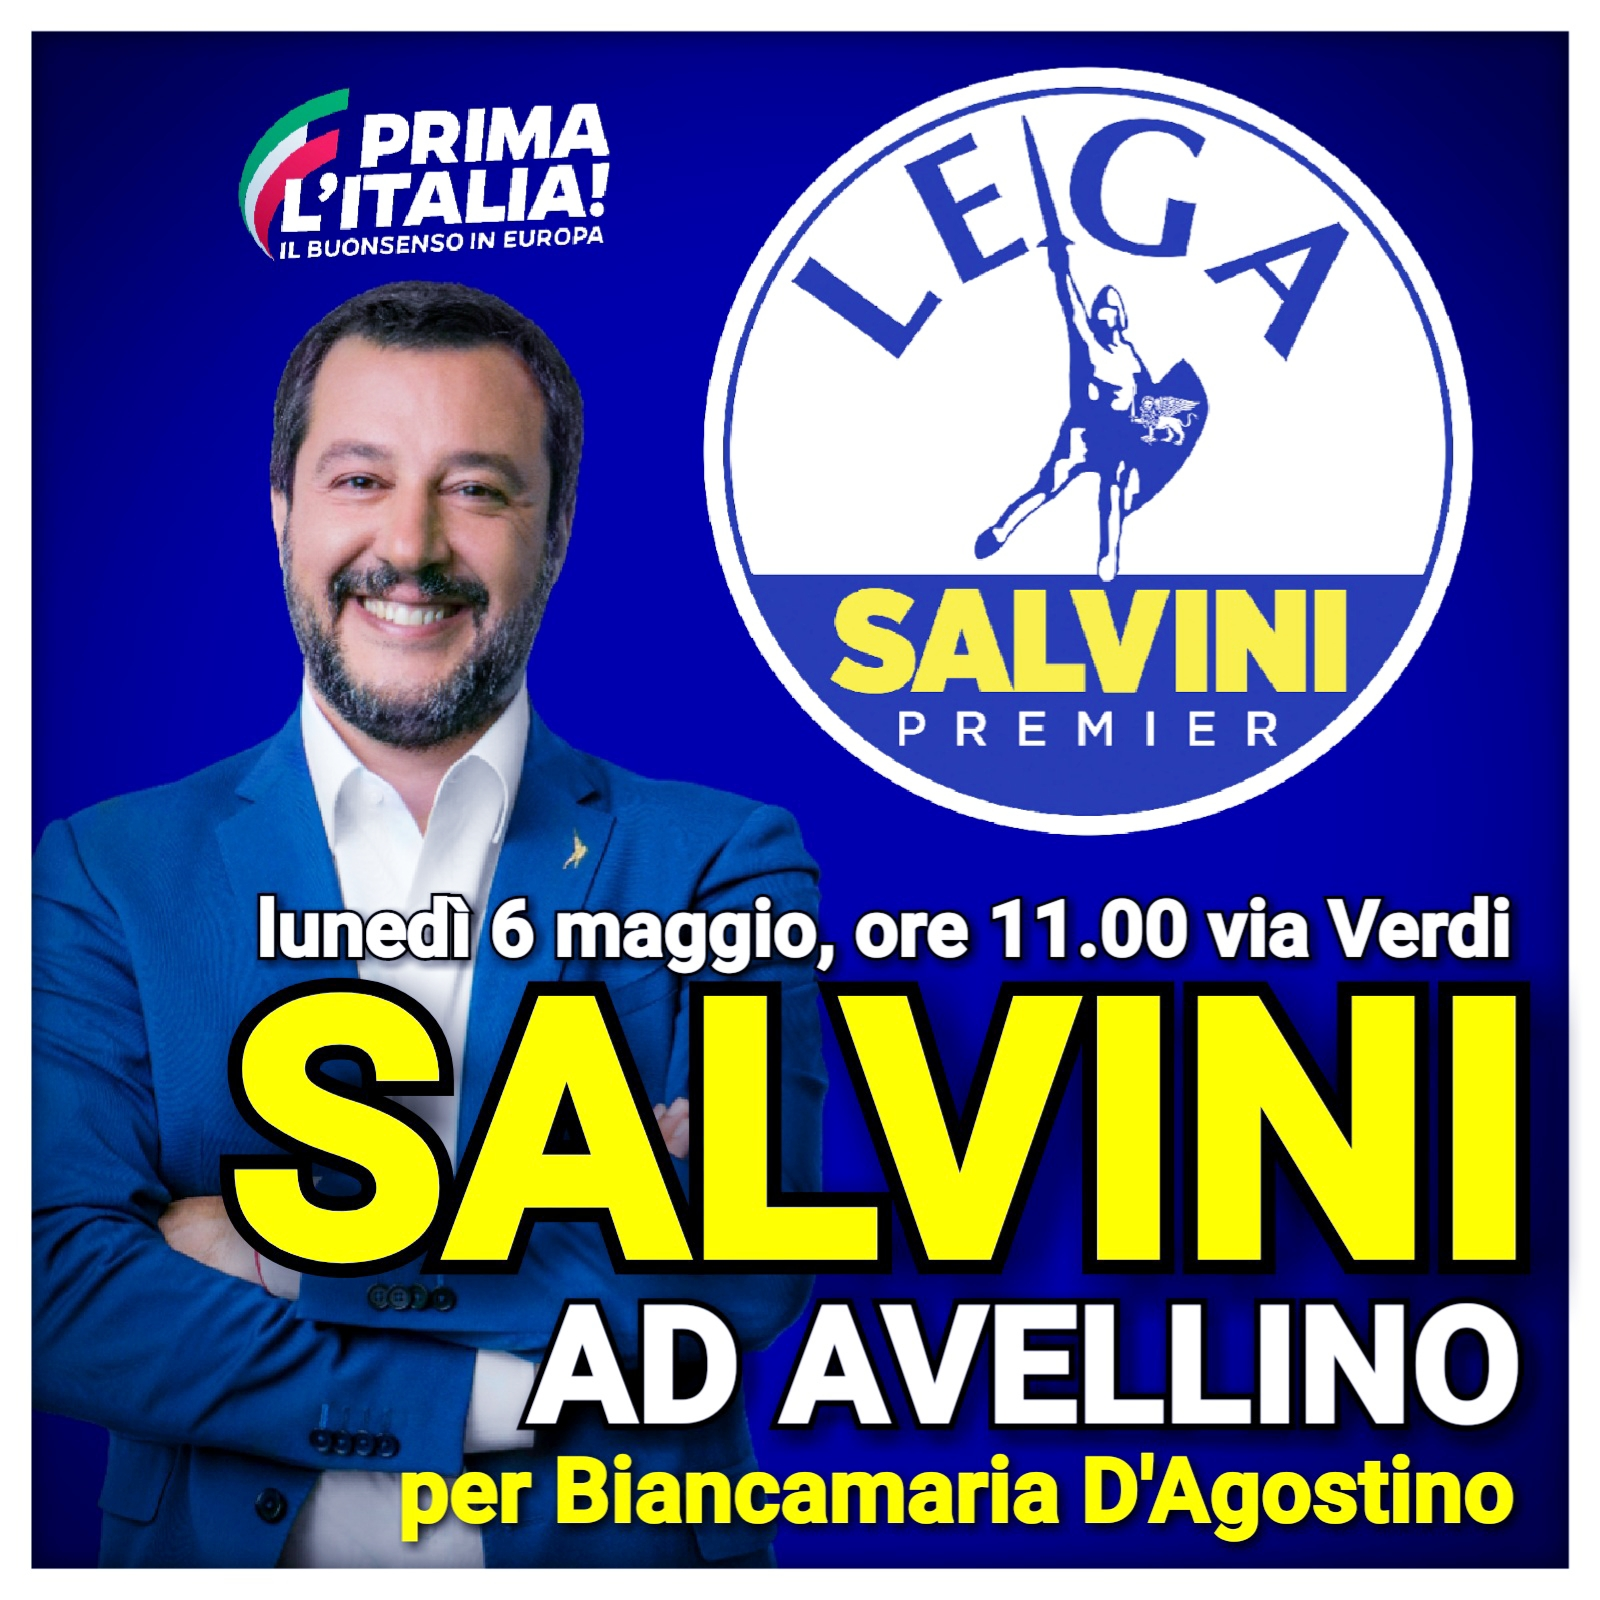 Avellino| Elezioni, lunedì Salvini in città per lanciare Biancamaria D’Agostino